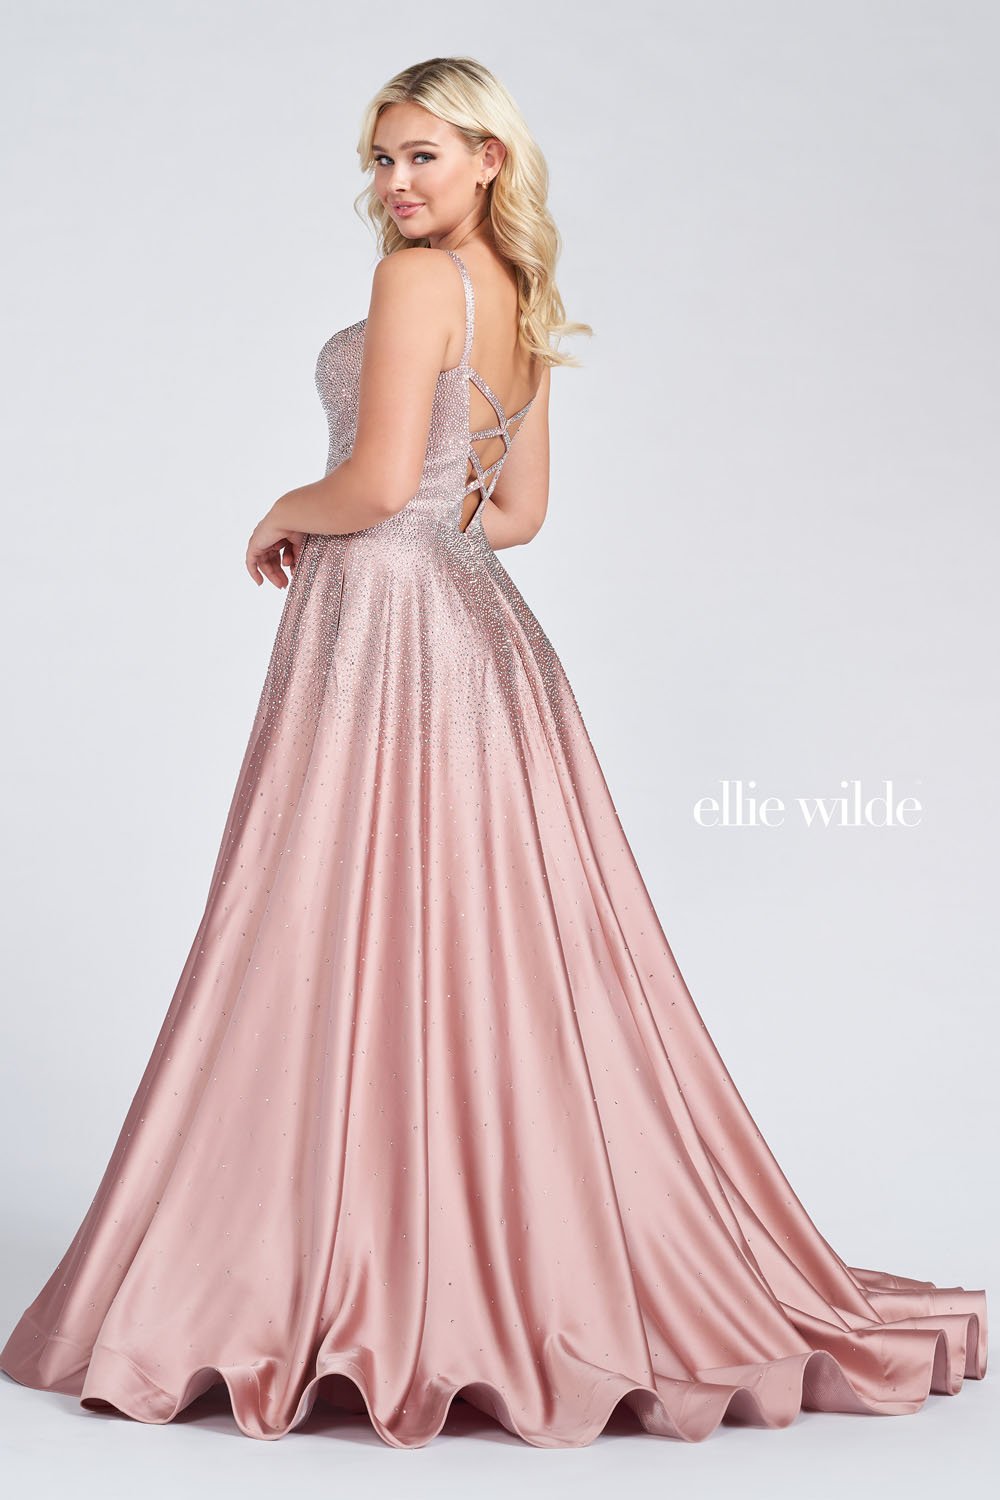 Ellie Wilde Dusty Rose Silver EW122015 Prom Dress Image.  Dusty Rose Silver formal dress.